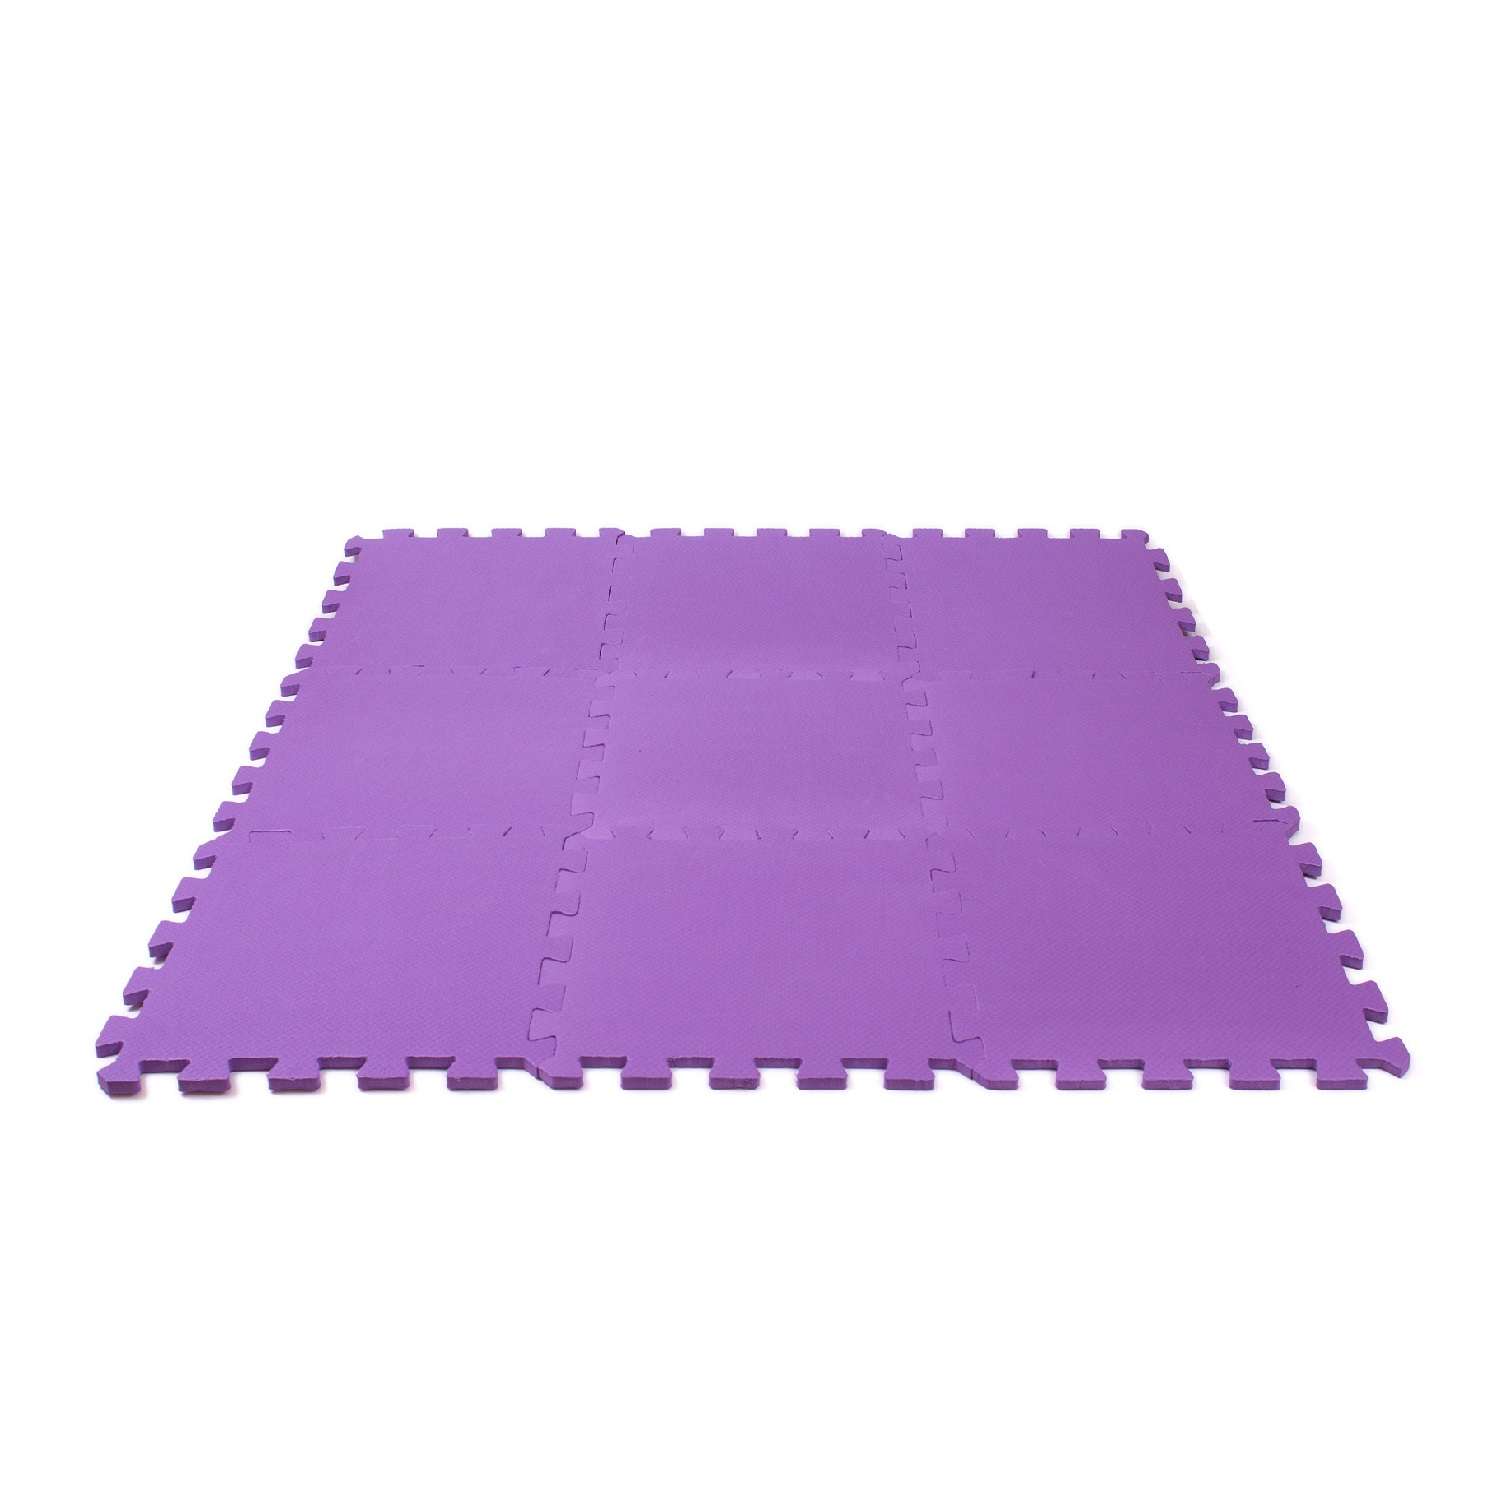 Развивающий детский коврик Eco cover игровой для ползания мягкий пол фиолетовый 33х33 - фото 2